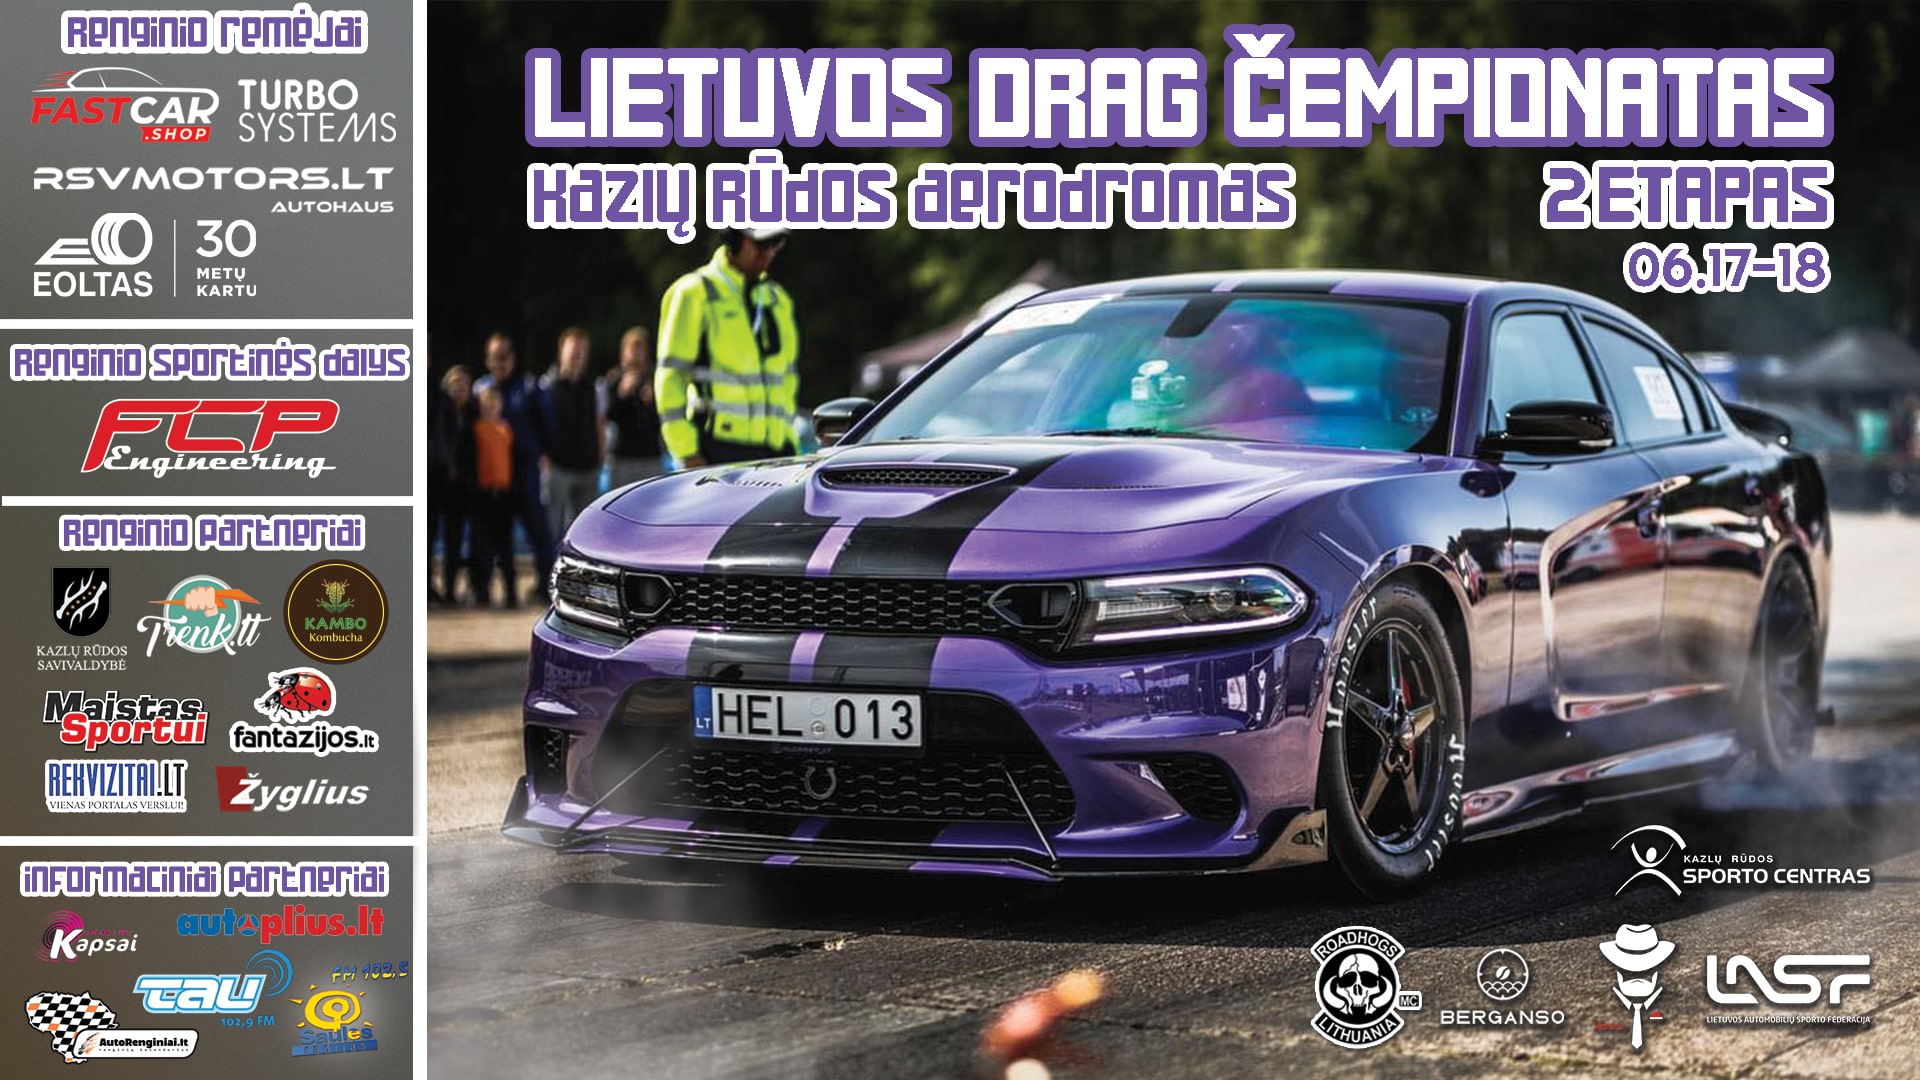 Lietuvos drag čempionato 2 etapas